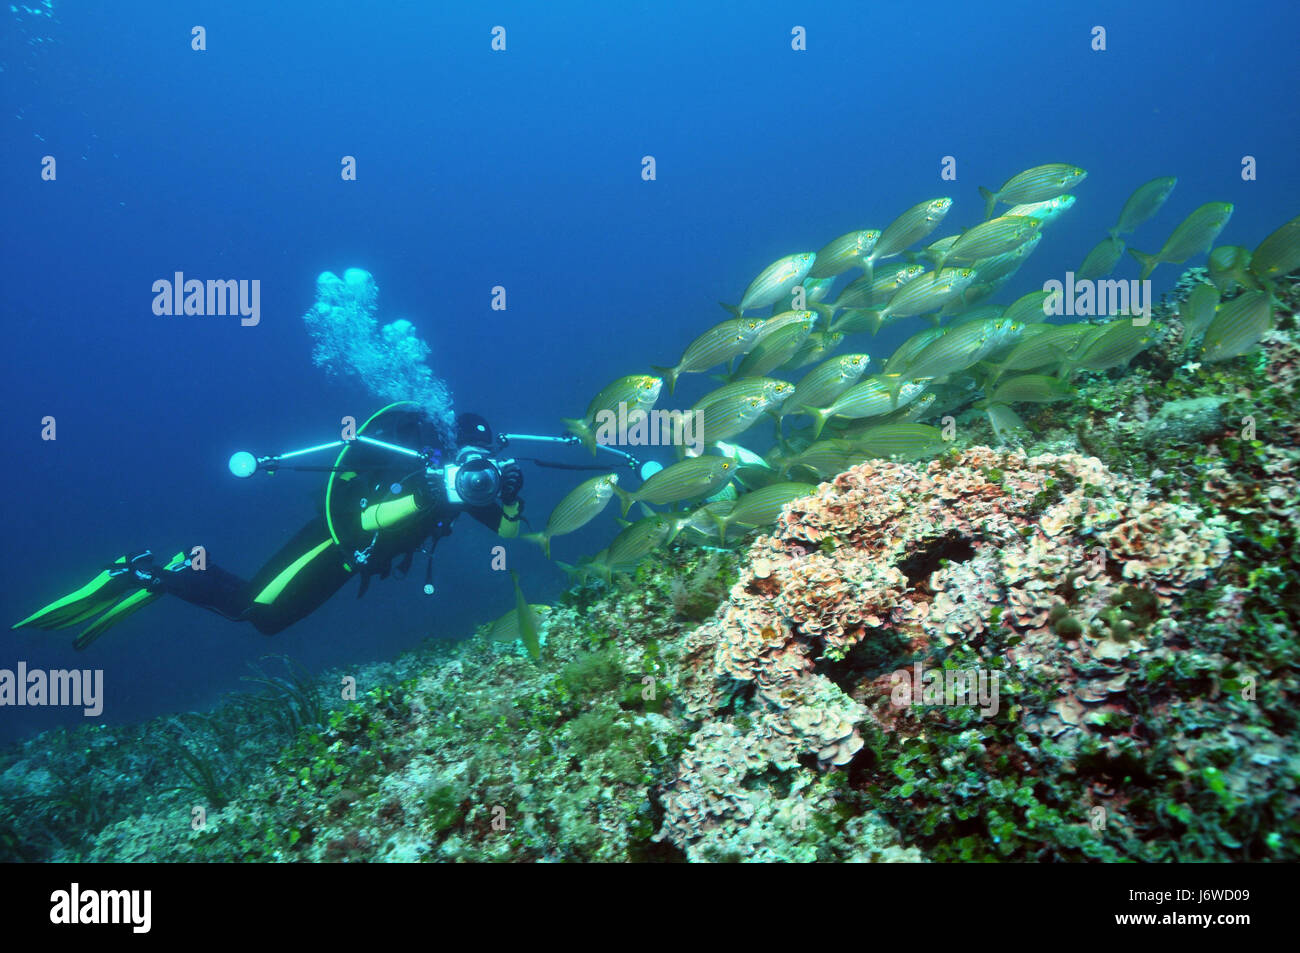 Strappare il fotografo subacqueo pesci pesce mediterraneo acqua acqua salata oceano mare Foto Stock